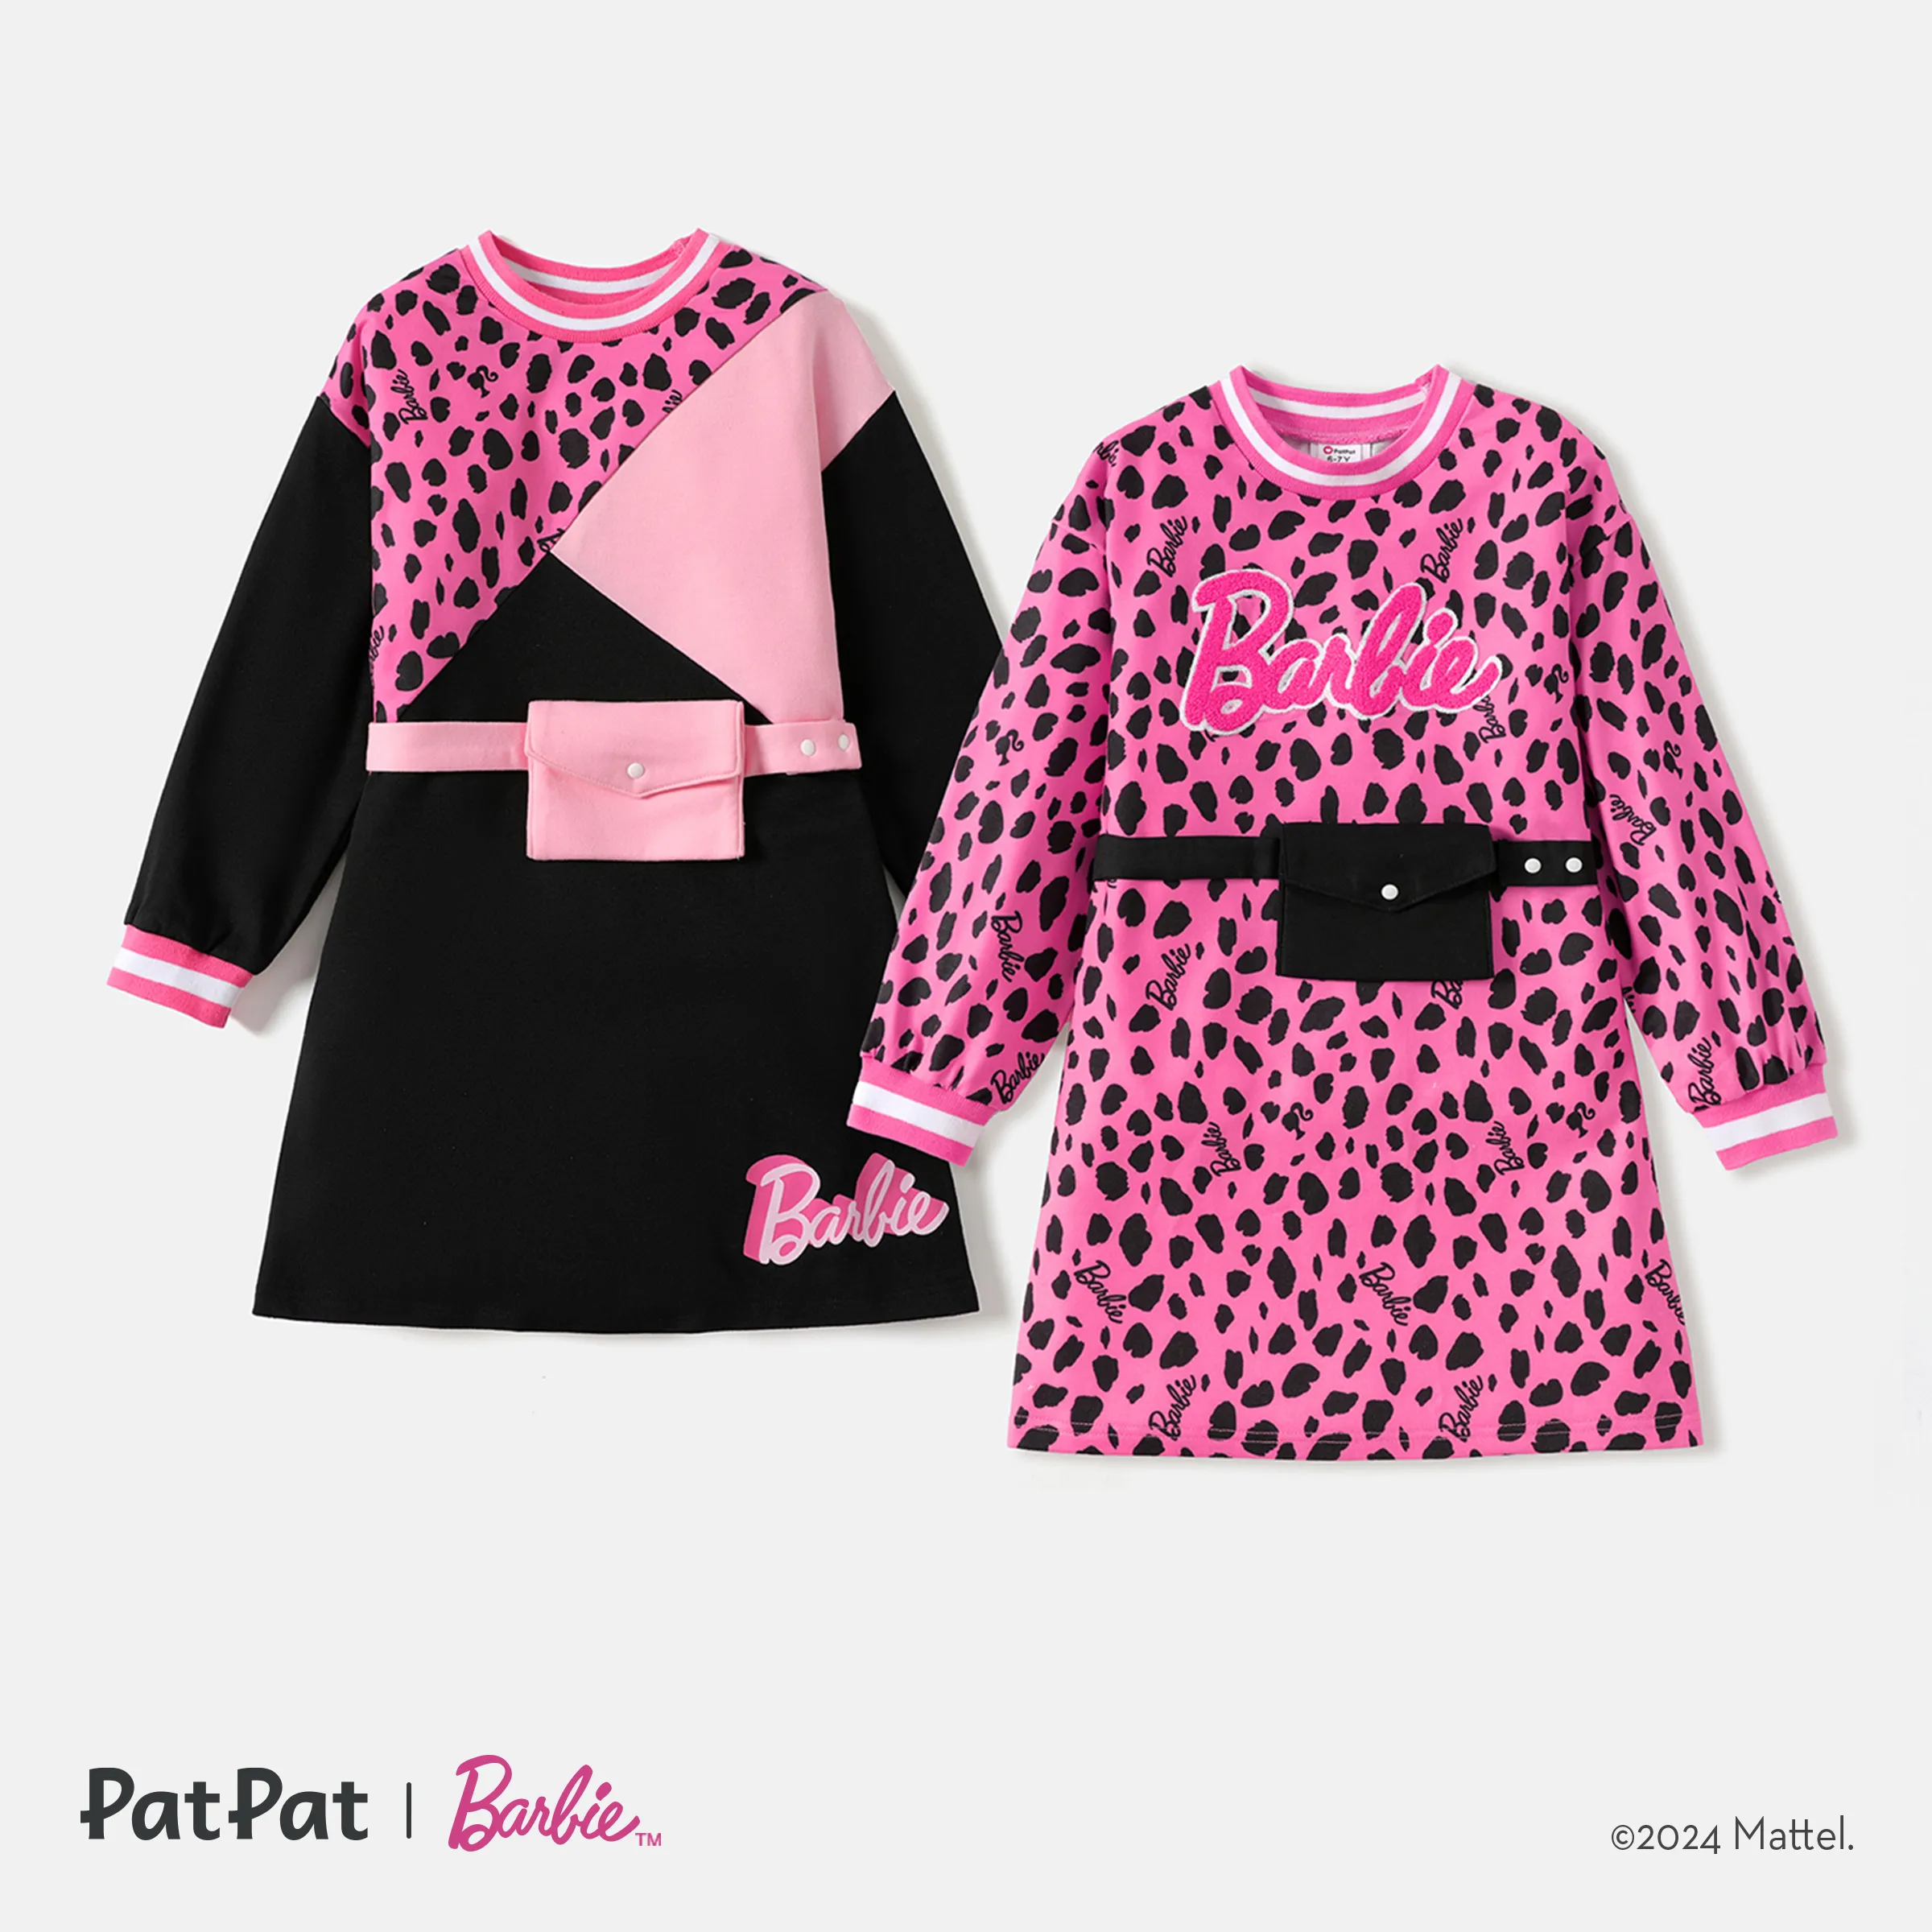 Barbie Enfant Fille Imprimé Léopard/colorblock Taille Sac Conception Sweat Robe